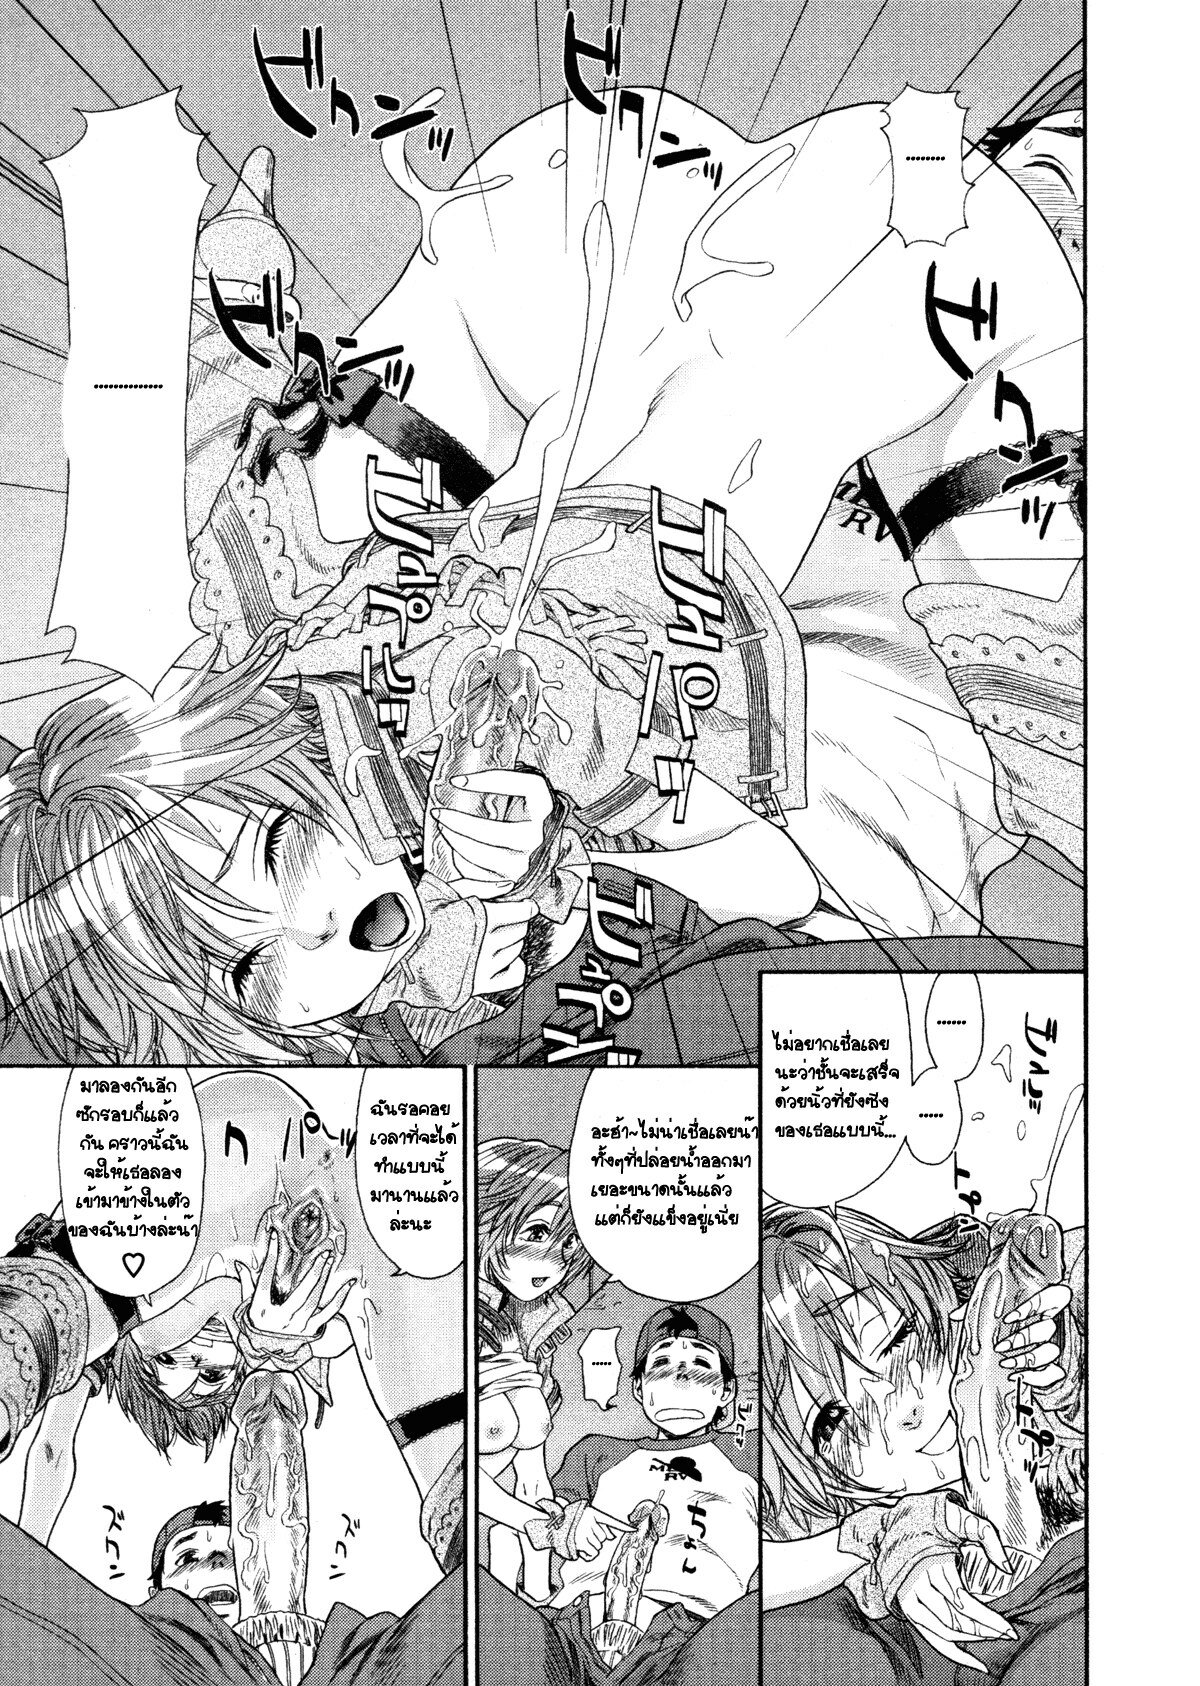 [Yamatogawa] COW GIRL =Aqua Bless chapter3= [Thai] page 17 full